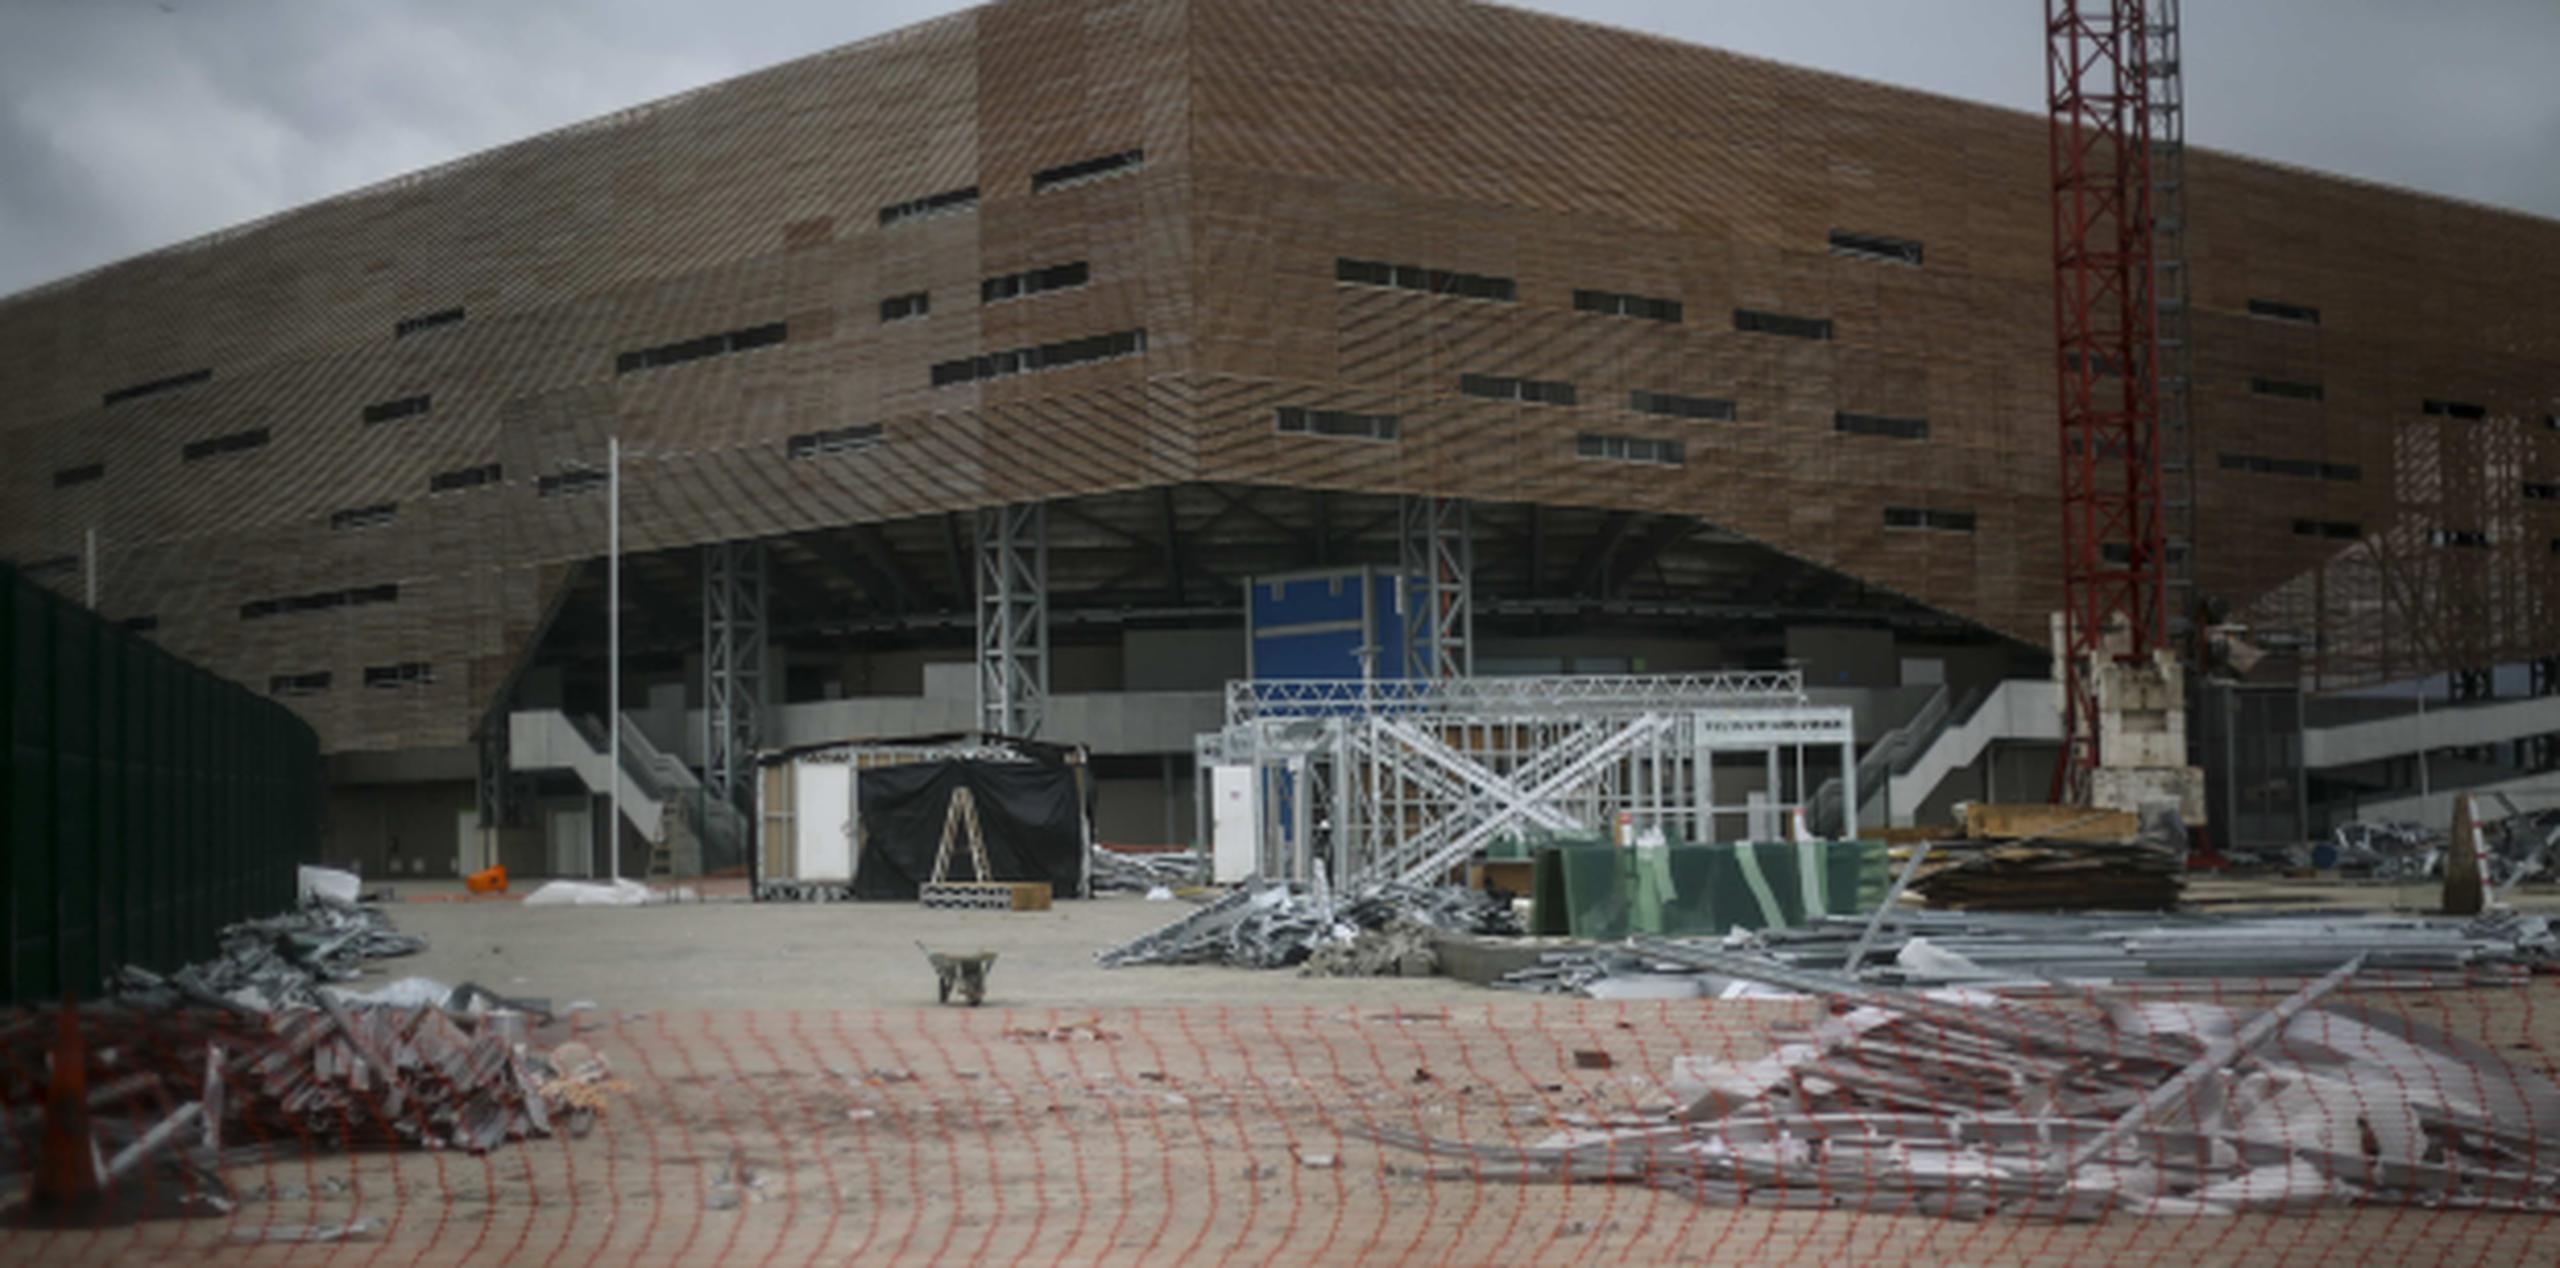 La sede donde se jugó el balonmano en Río 2016 está en planes de ser desmantelada por completo. (EFE/Antonio Lacerda)
